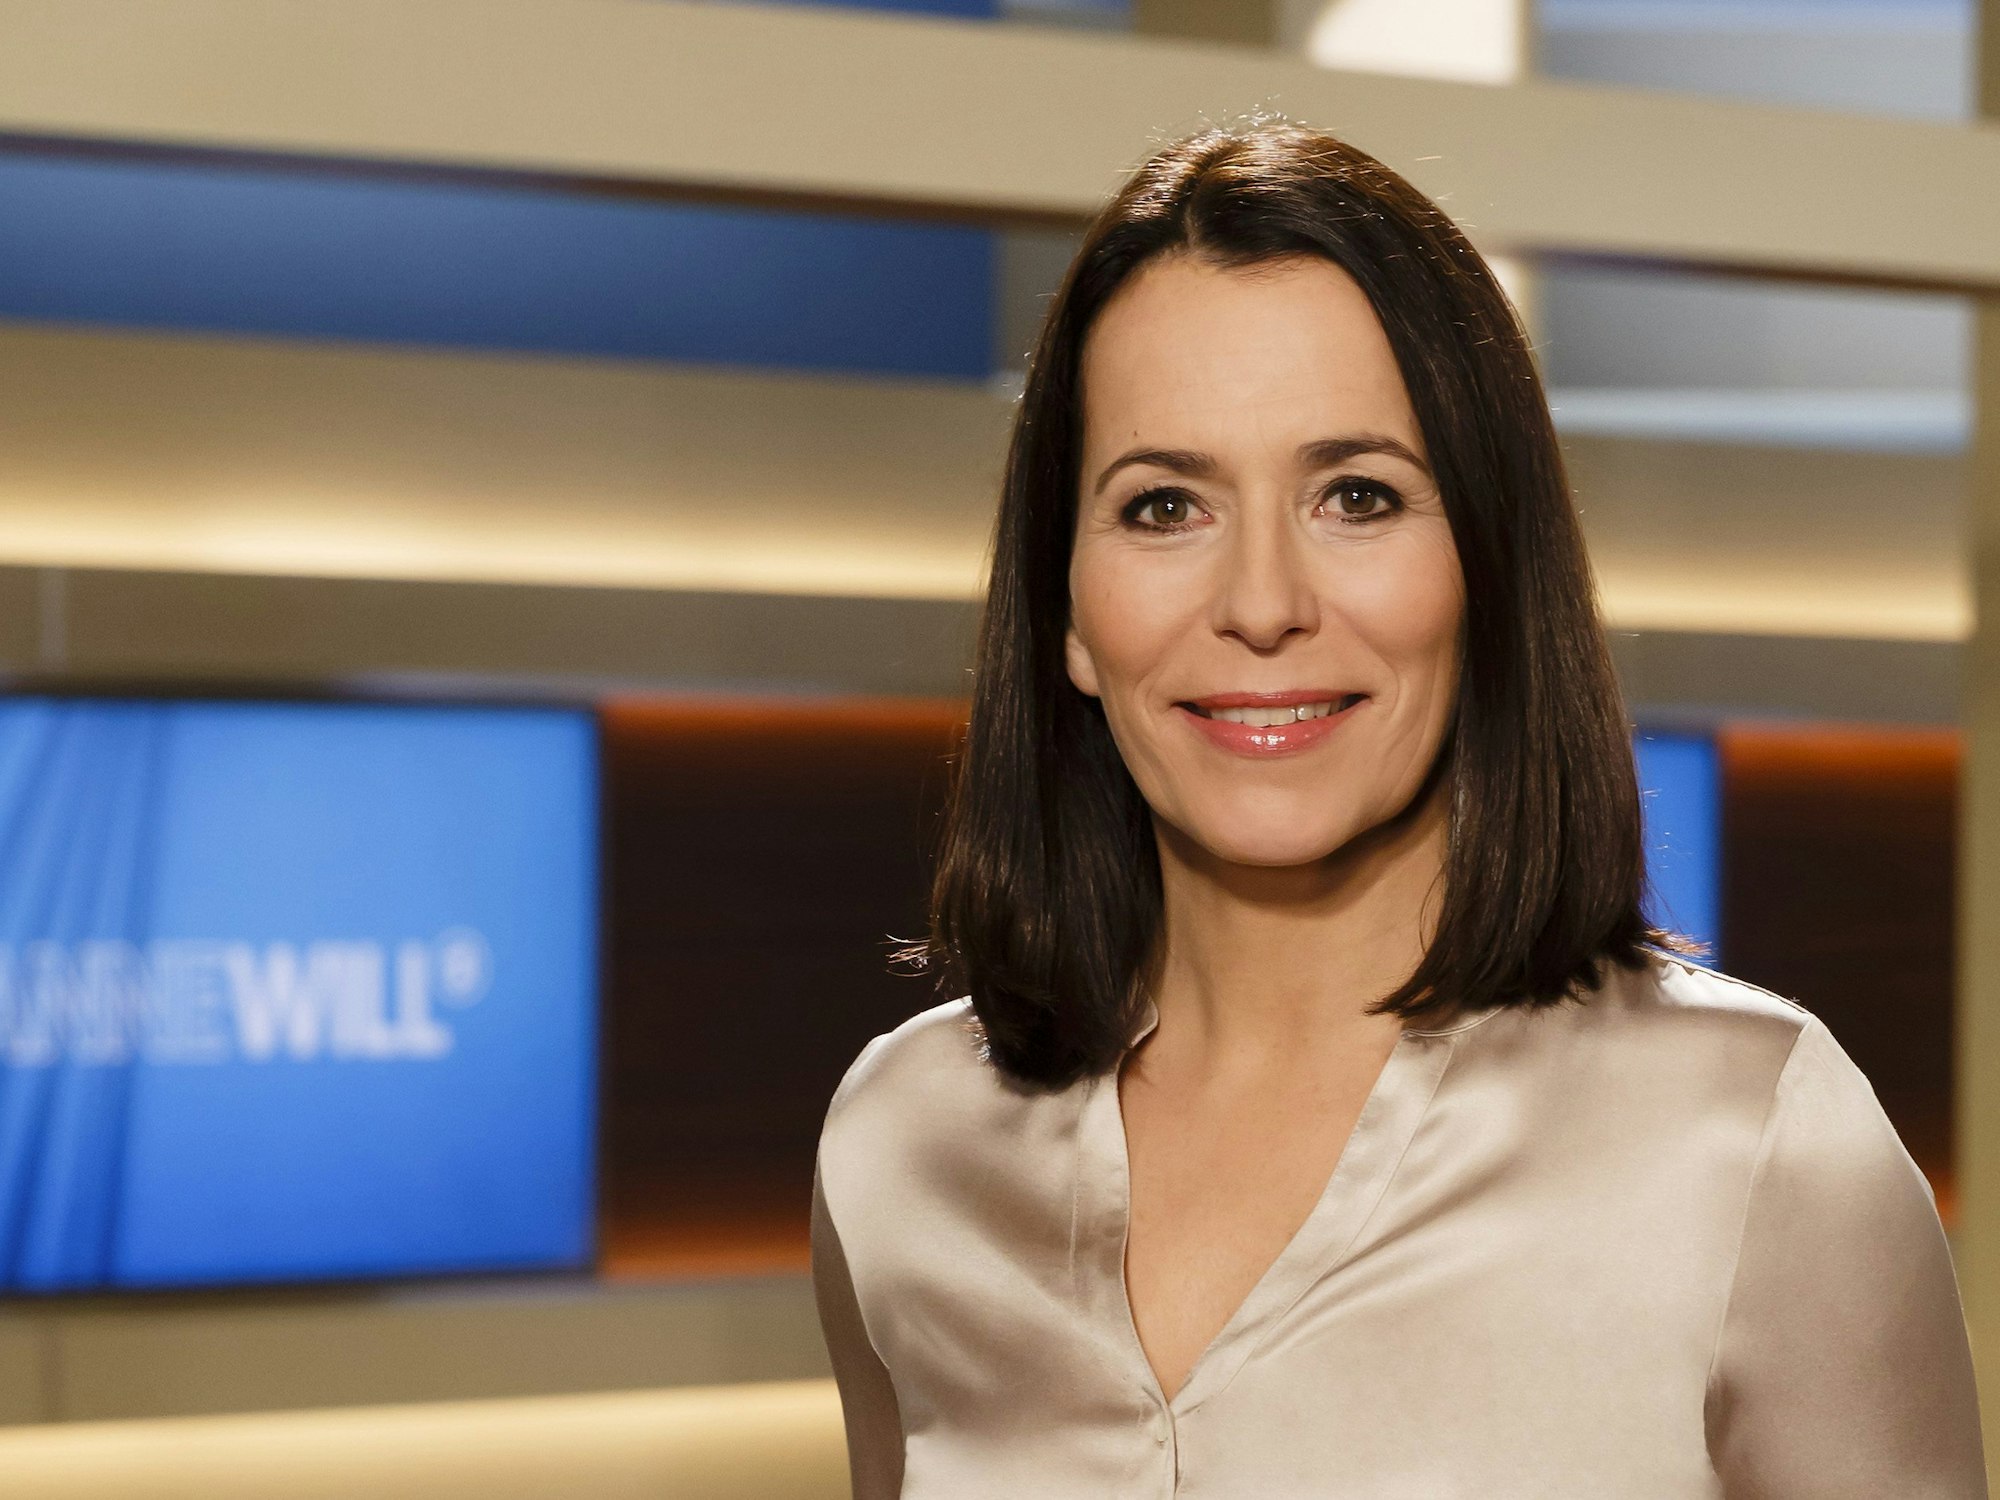 Anne Will moderierte am Sonntagabend (30. Januar 2022) wieder ihre ARD-Talkshow.